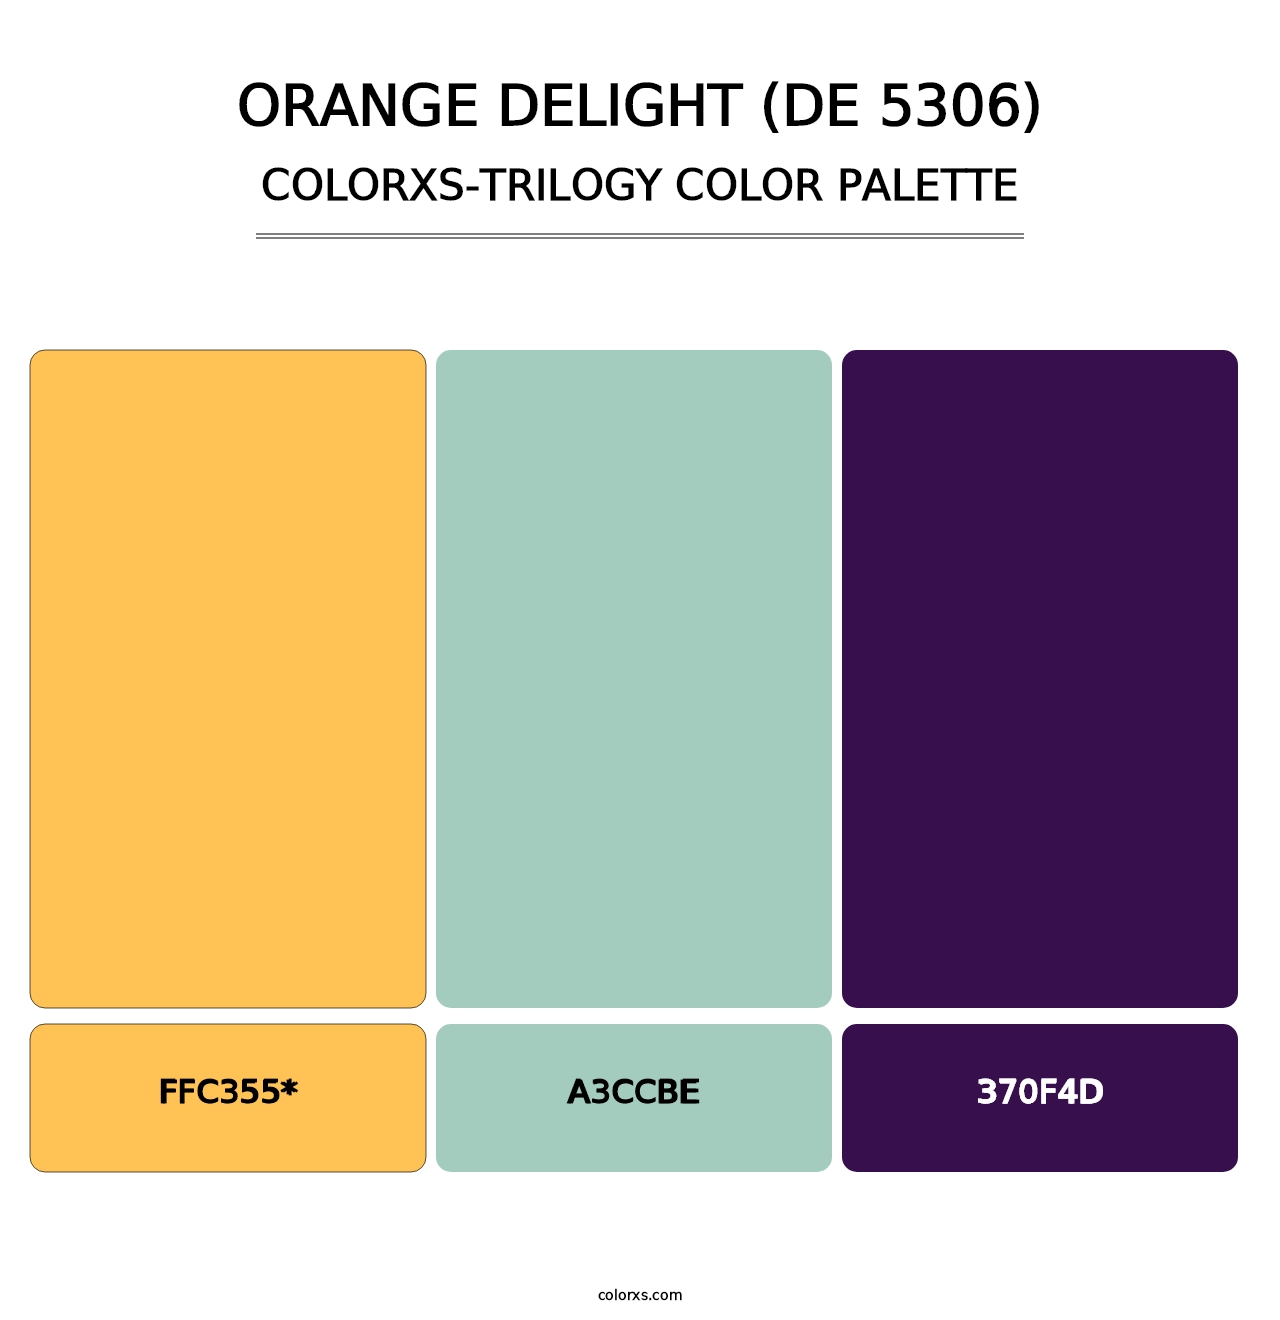 Orange Delight (DE 5306) - Colorxs Trilogy Palette